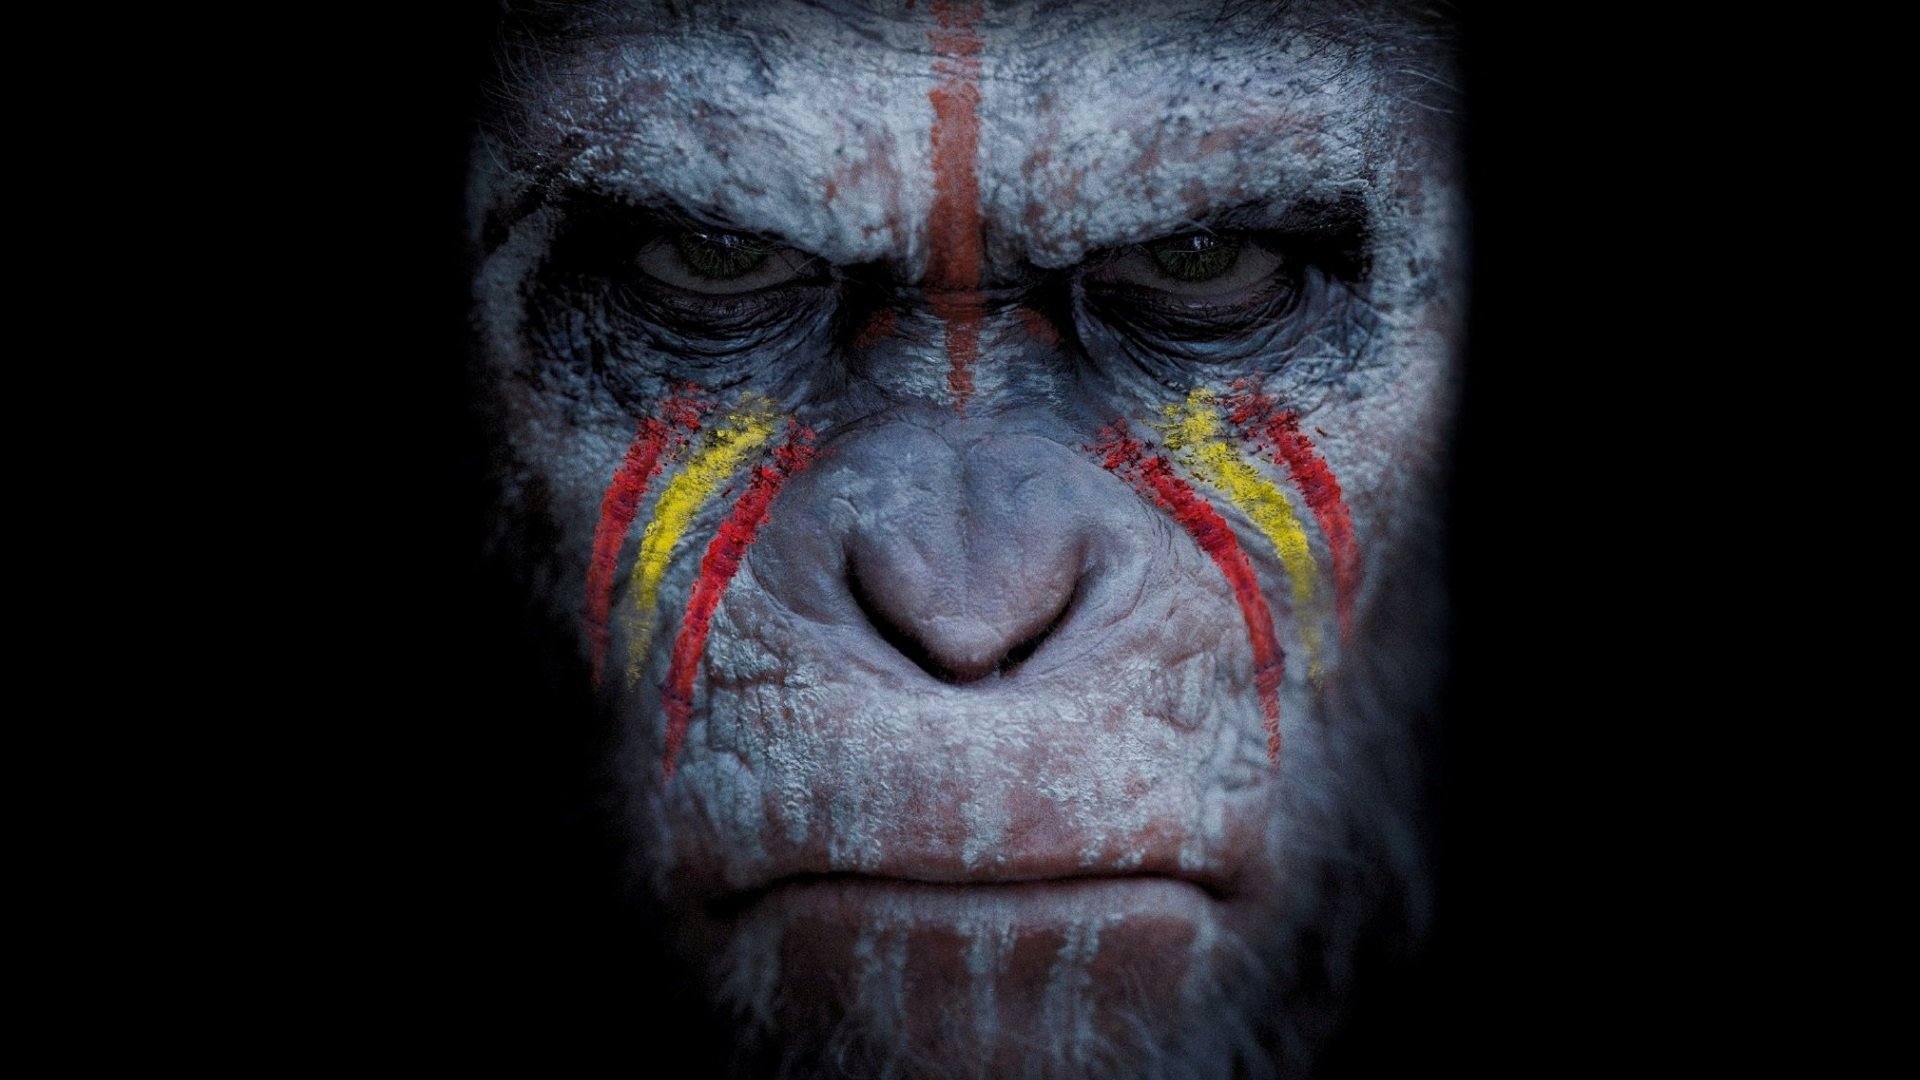 Планета обезьян революция 2014 субтитры обезьян. Планета обезьян революция Коба.